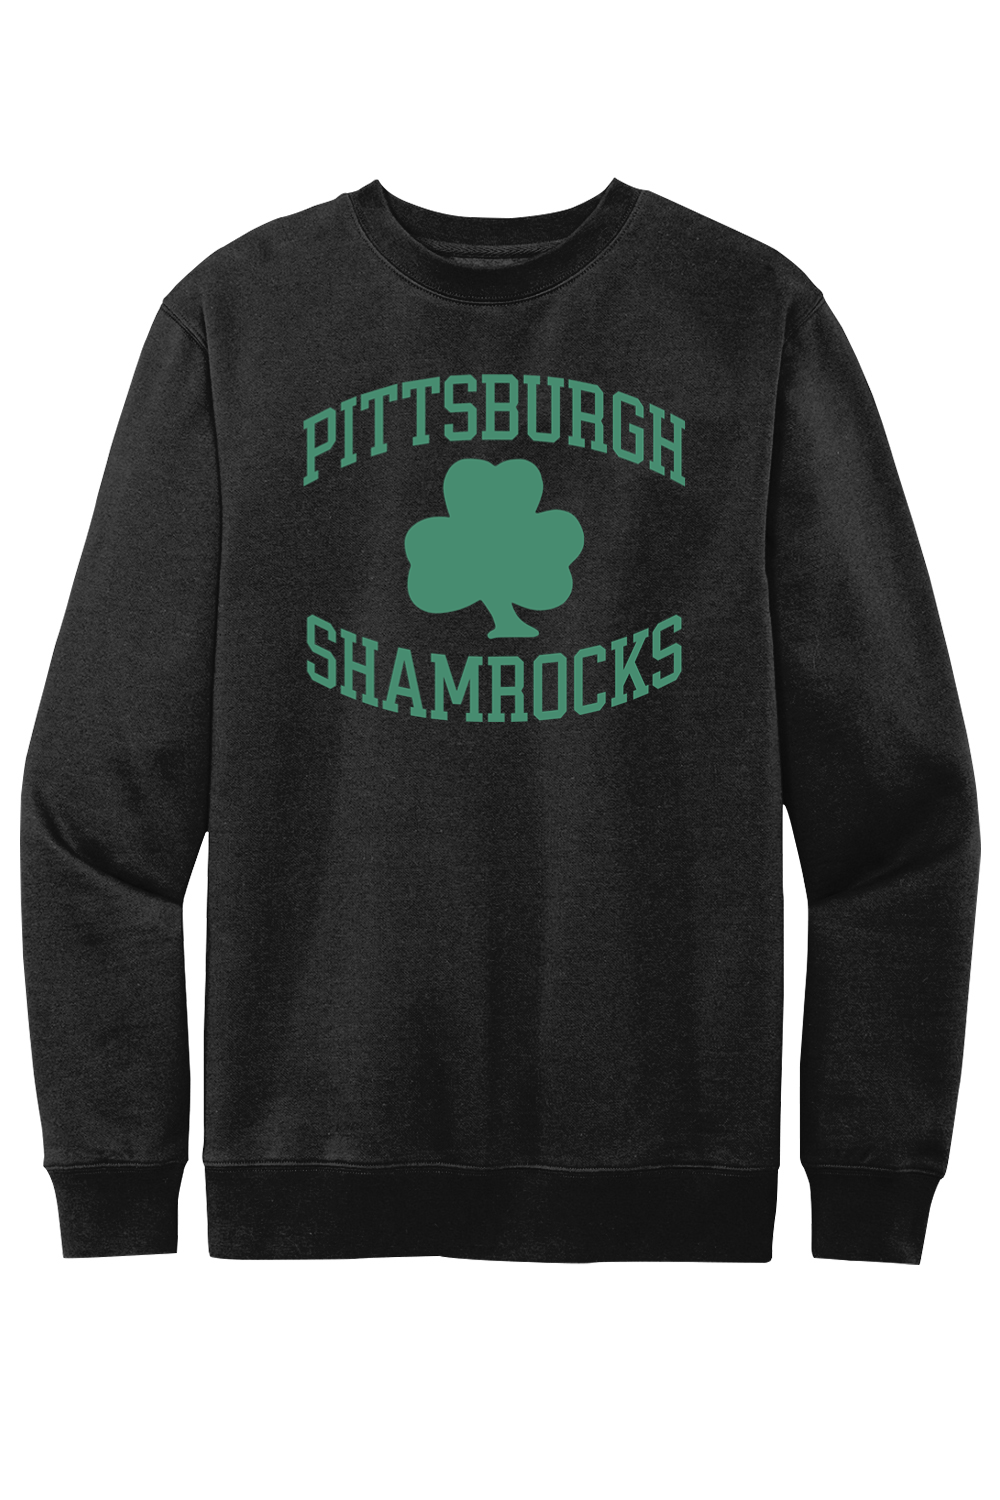 Pittsburgh Shamrocks Hockey - Fleece Crewneck Sweatshirt - Yinzylvania